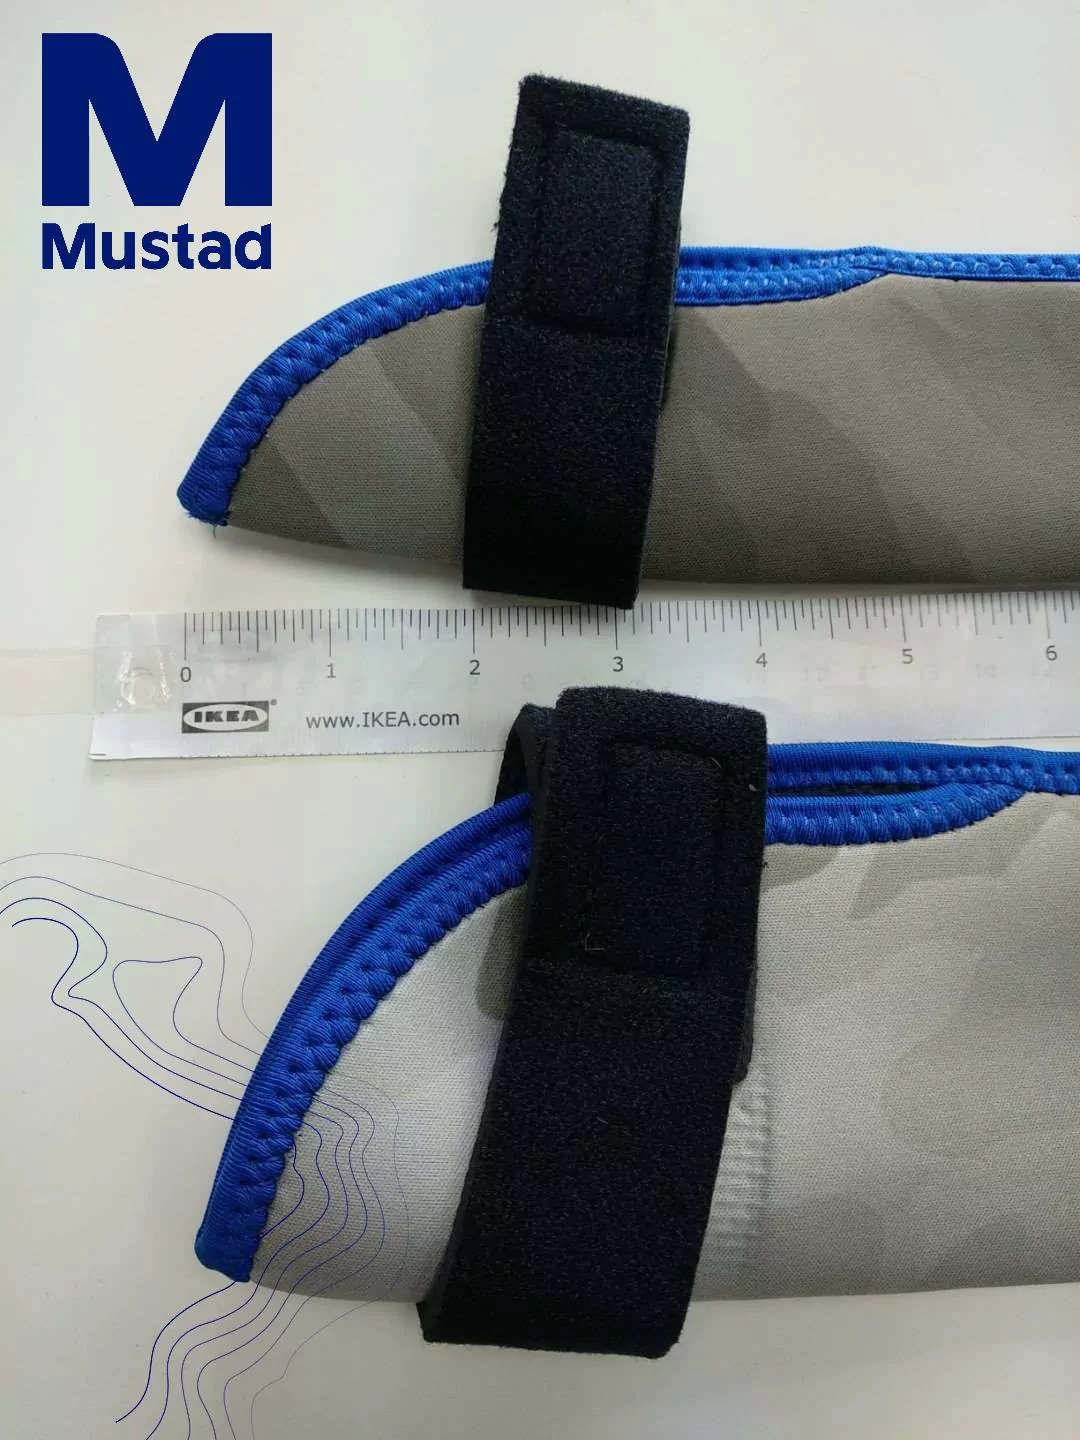 MUSTAD MTP02 Neoprene Rod Tip Protector Camo: Accessories Online